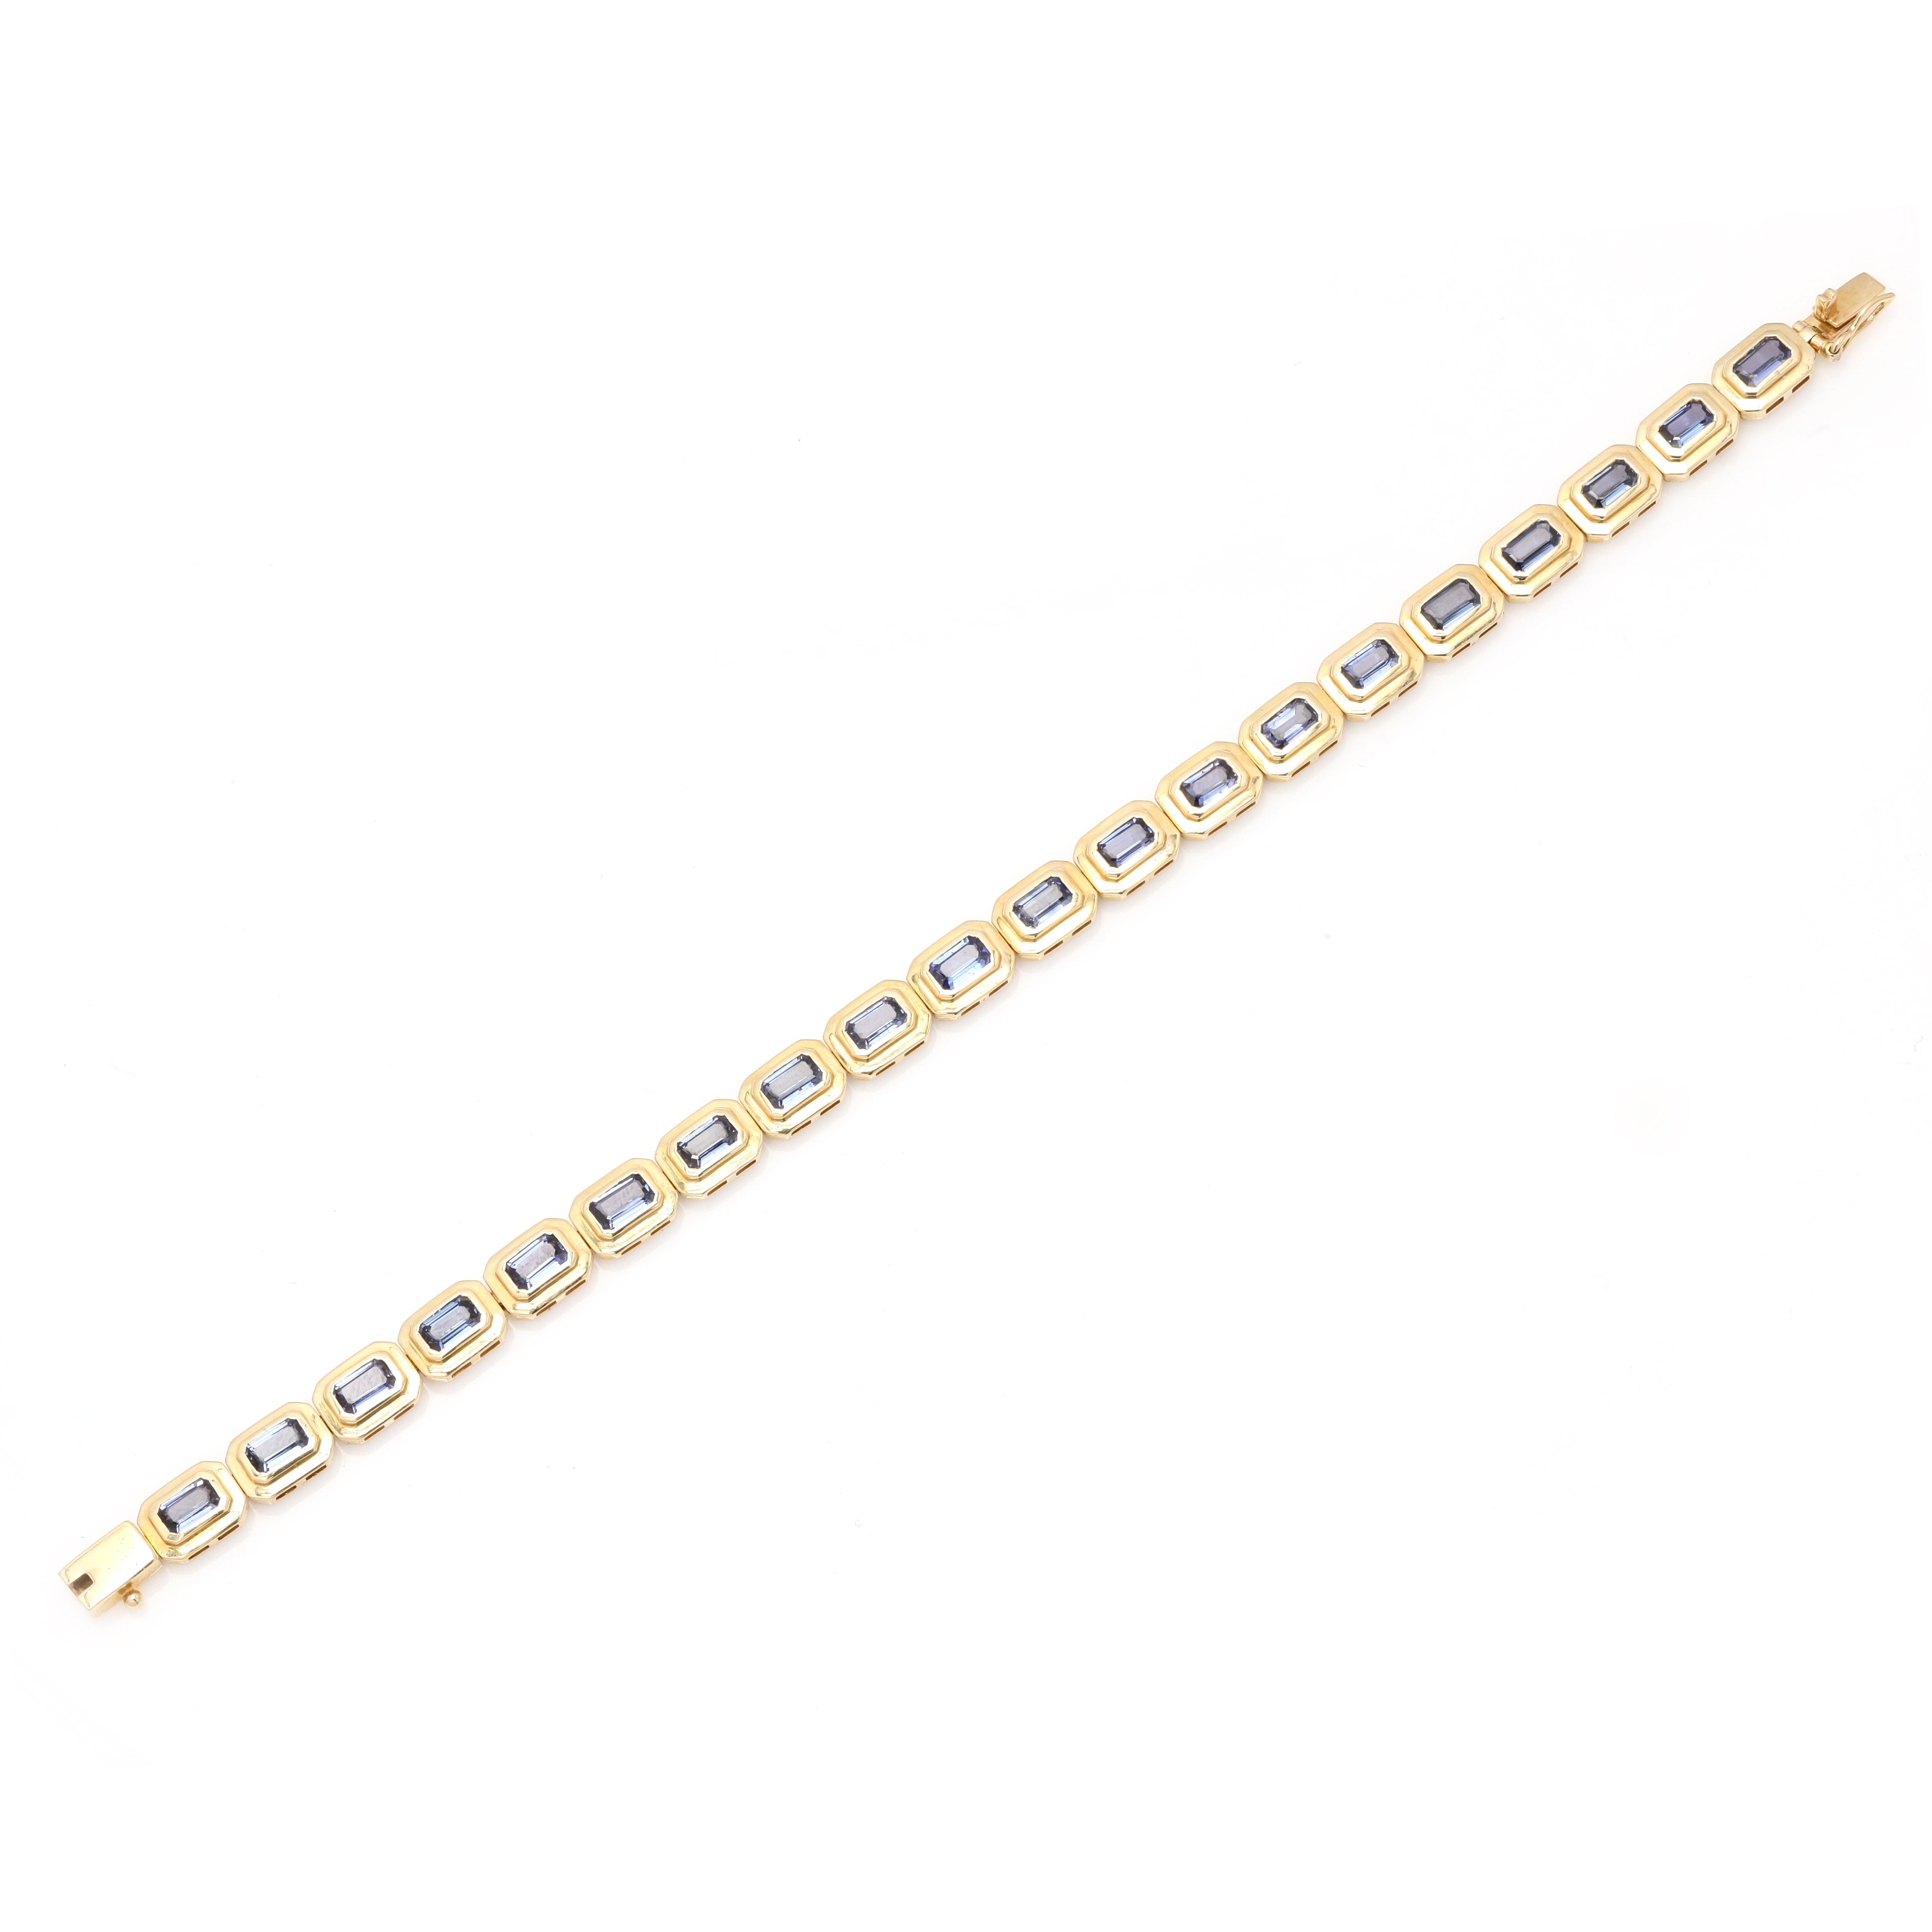 Tansanit-Edelstein-Tennisarmband aus 14 Karat Gold. Es hat einen perfekten achteckigen Schliff Edelstein, um Sie stehen auf jeder Gelegenheit oder ein Ereignis.
Tansanit ermöglicht eine höhere Konzentration.
Dieses handgefertigte Tennisarmband aus